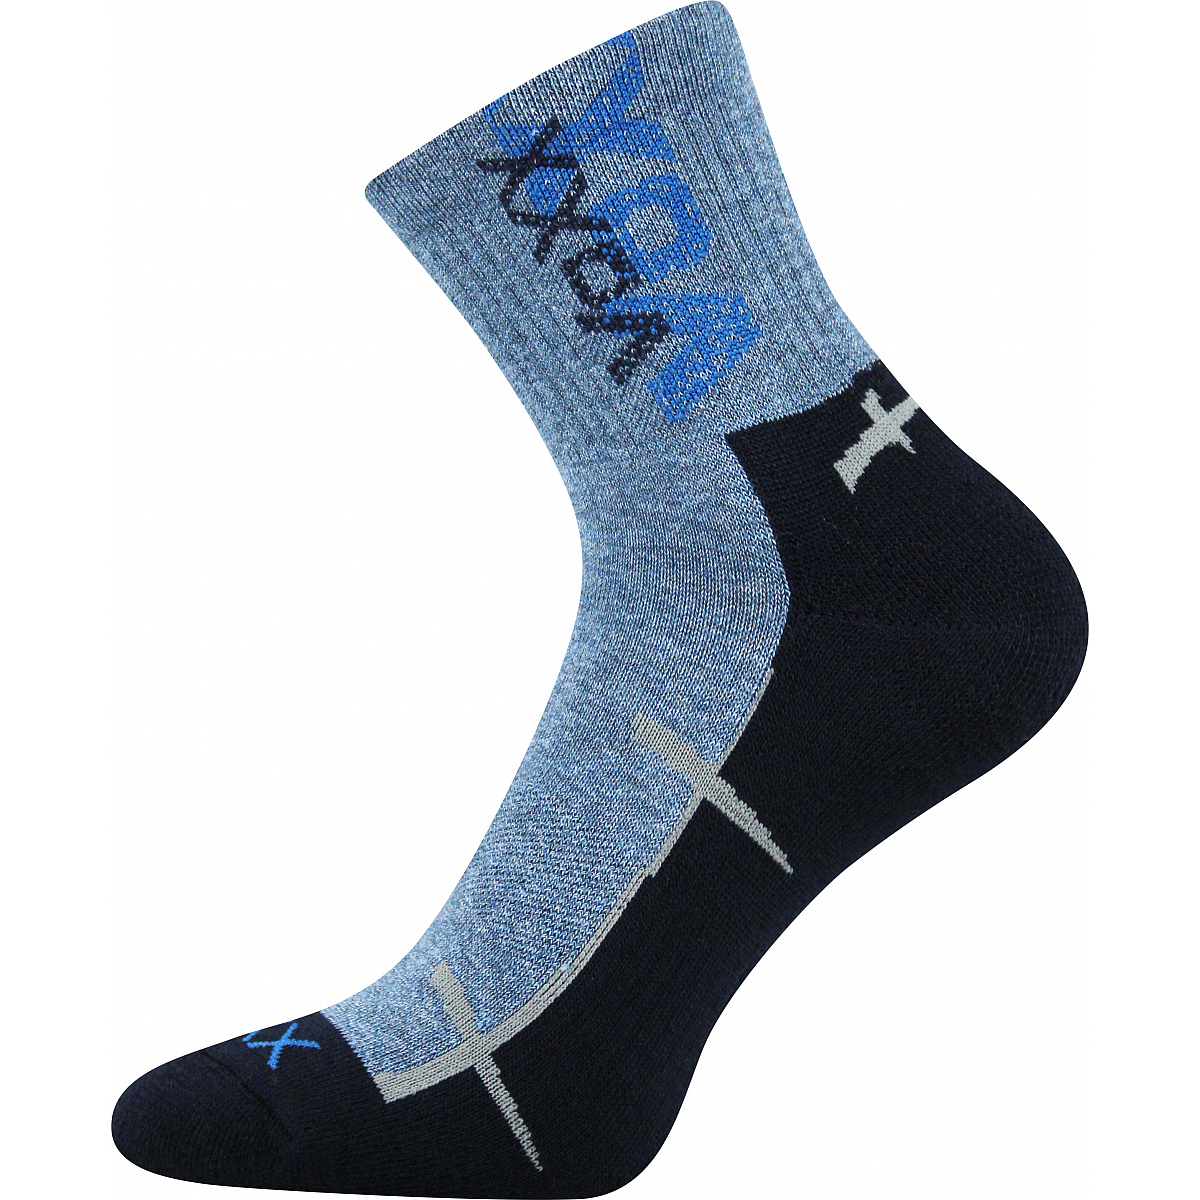 Sportovní ponožky Voxx Walli - modré, 43-46